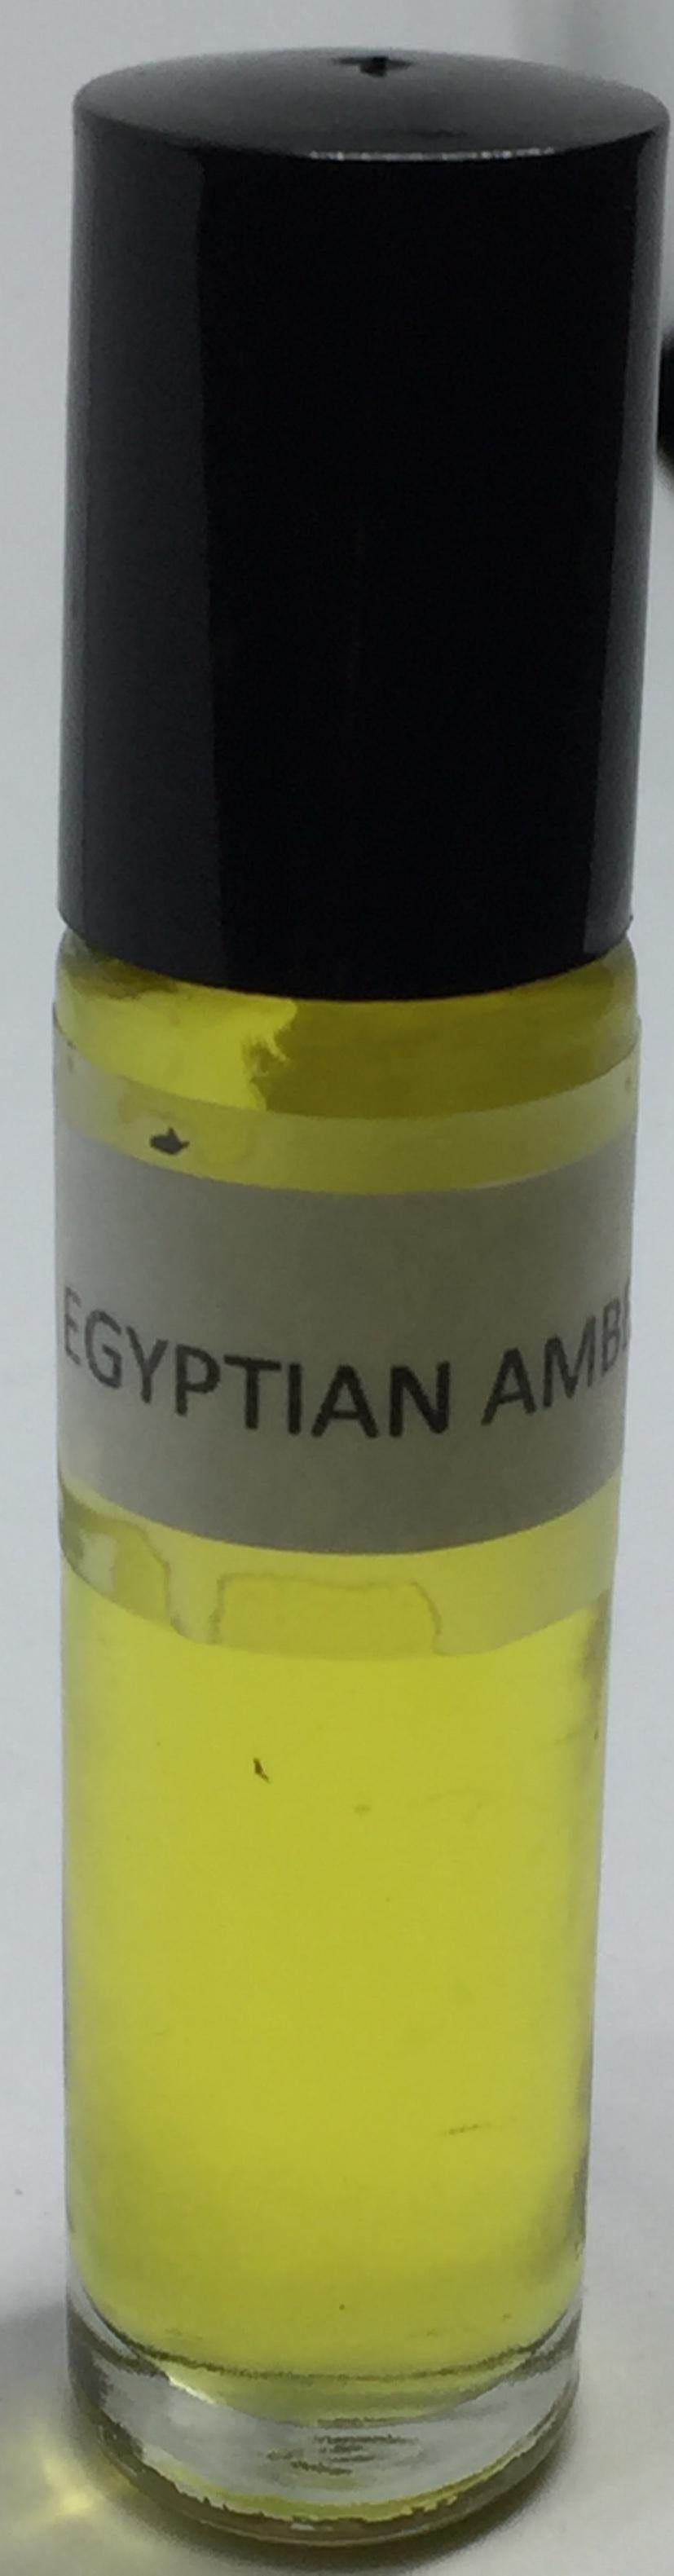 Egyptian Amber: Fragrance(Perfume)Body Oil Unisex